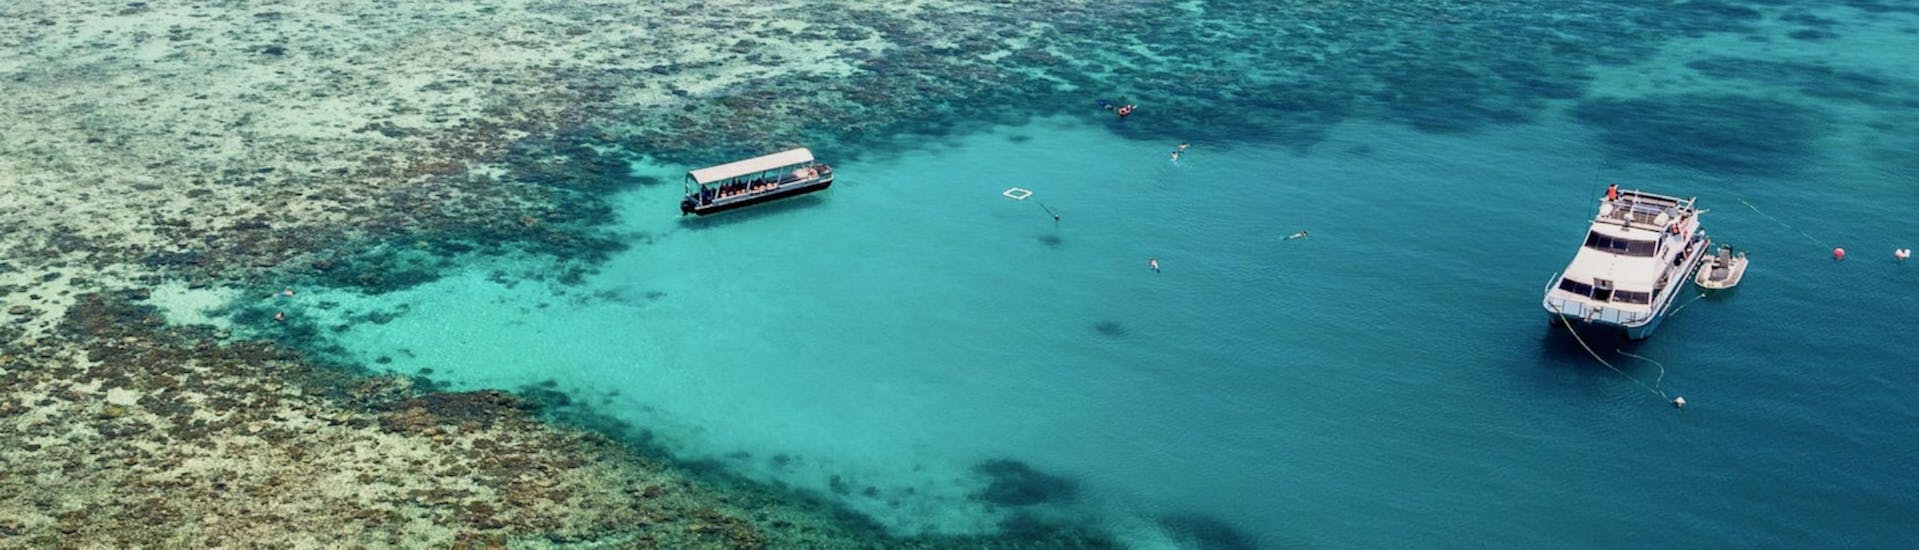 Gita in barca a Great Barrier Reef con bagno in mare e osservazione della fauna selvatica.